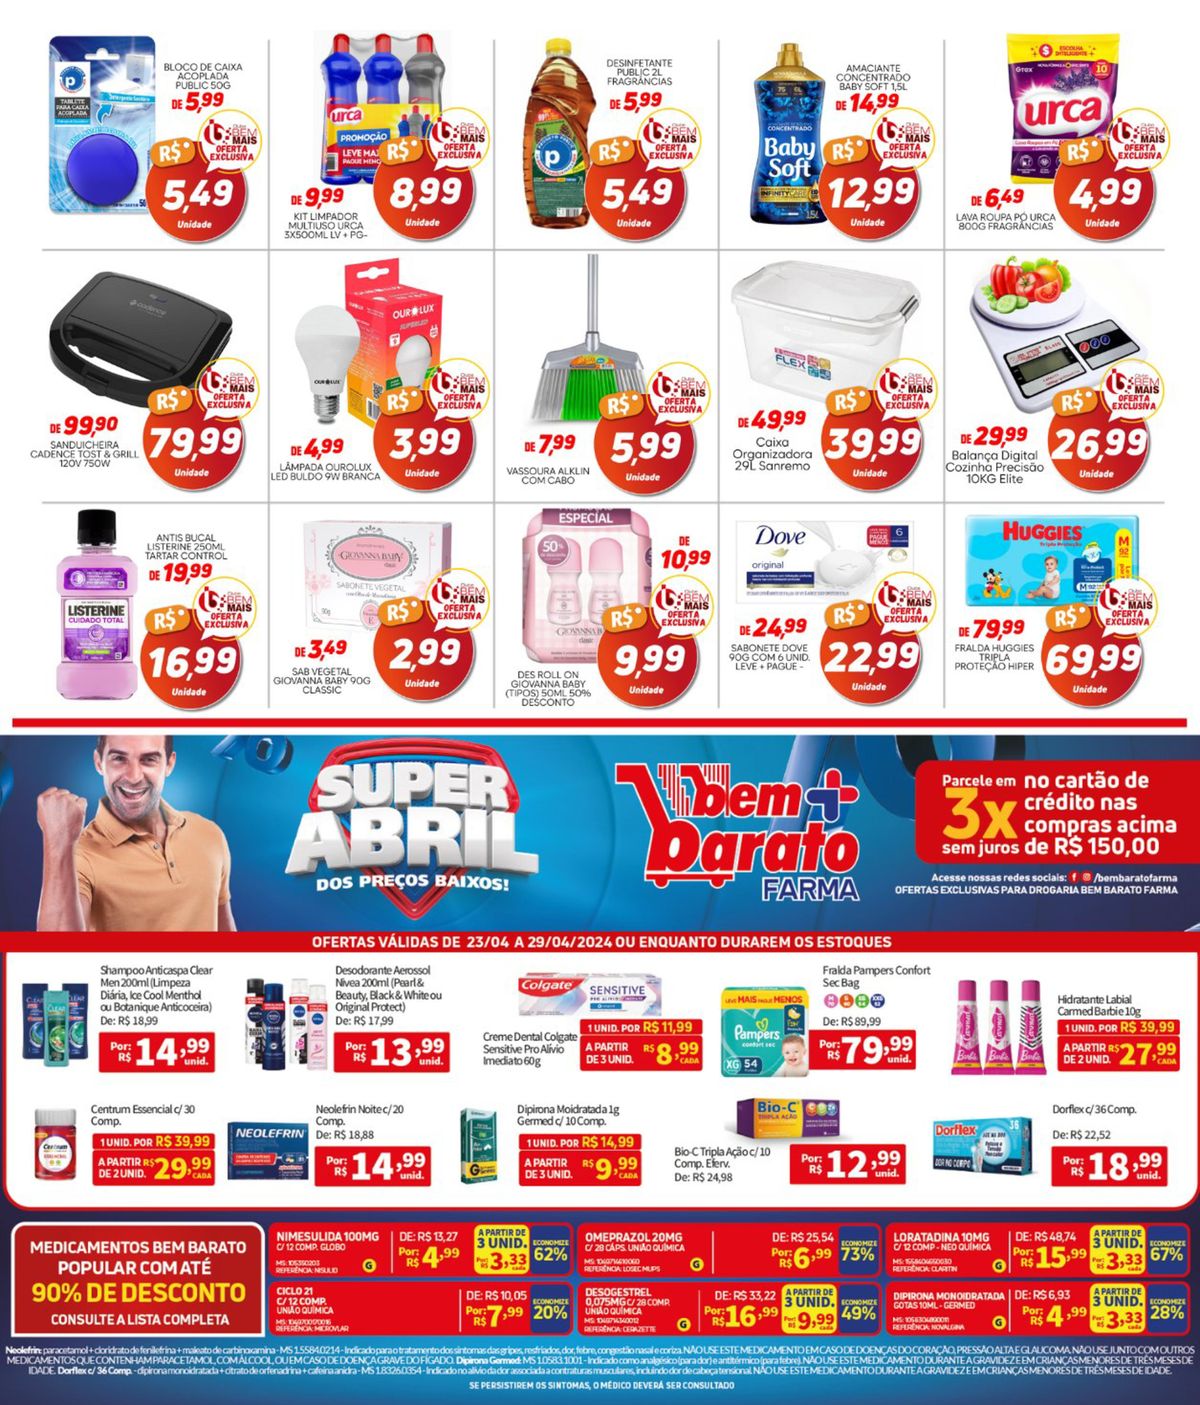 Desodorante Aemssol, Nívea 20, Shampoo Articaspa e mais produtos em promoção!